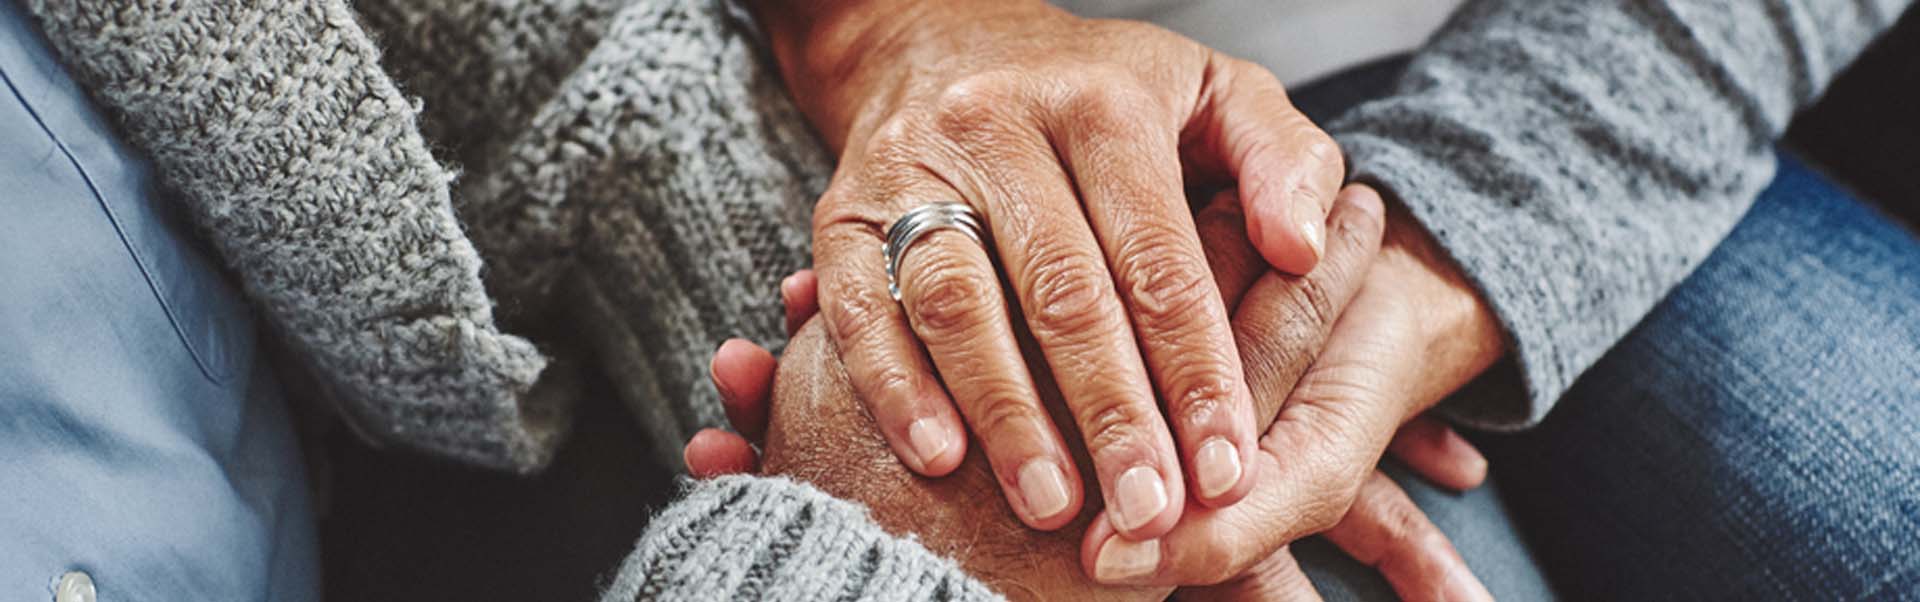 Female carer holding hands of senior man